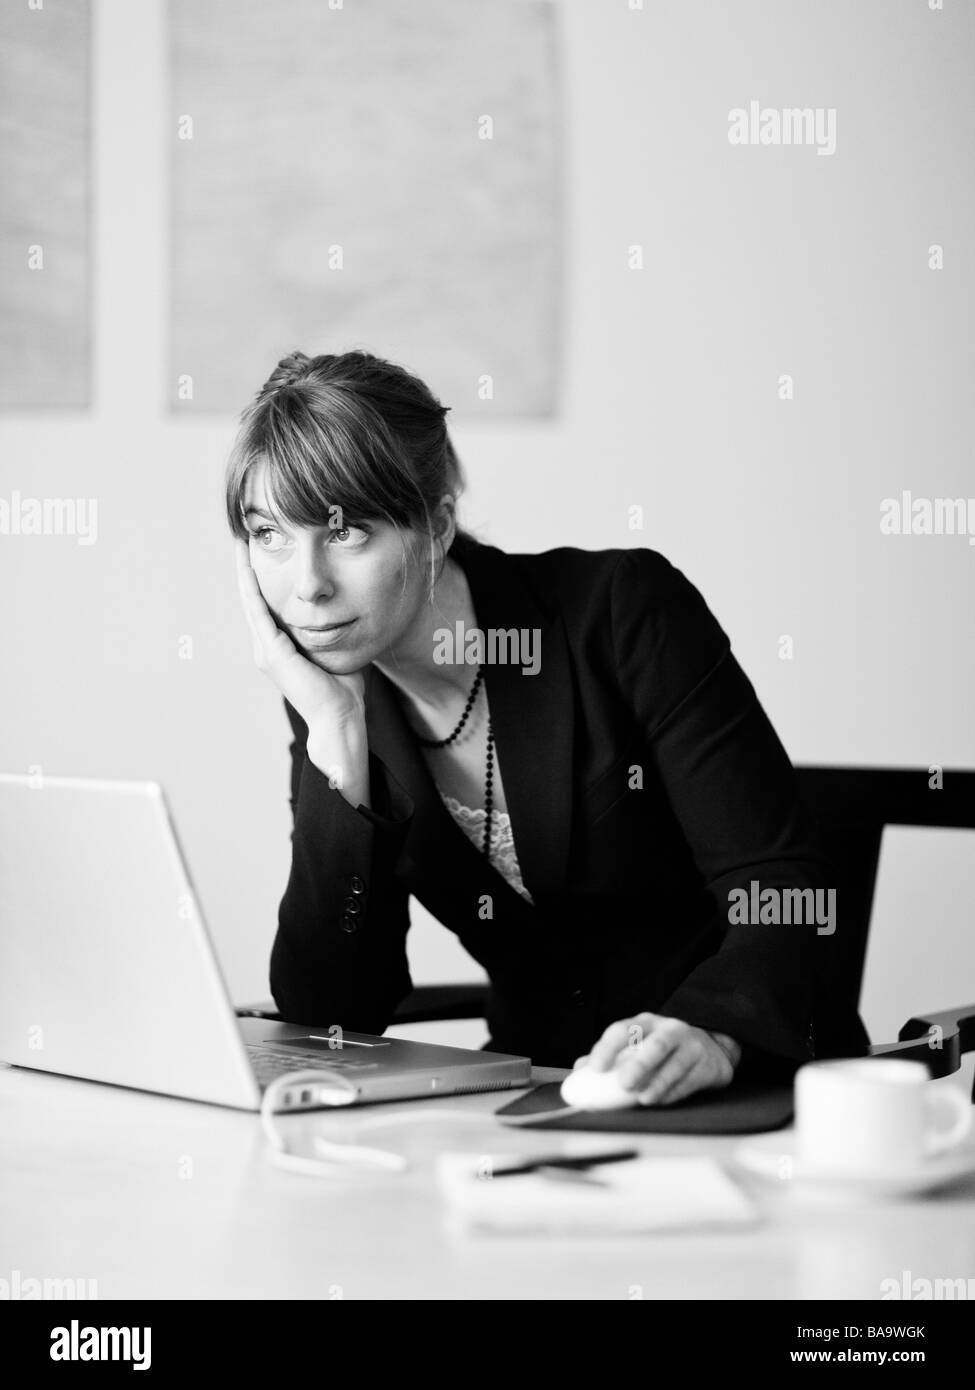 Une femme utilisant un ordinateur portable, la Suède. Banque D'Images